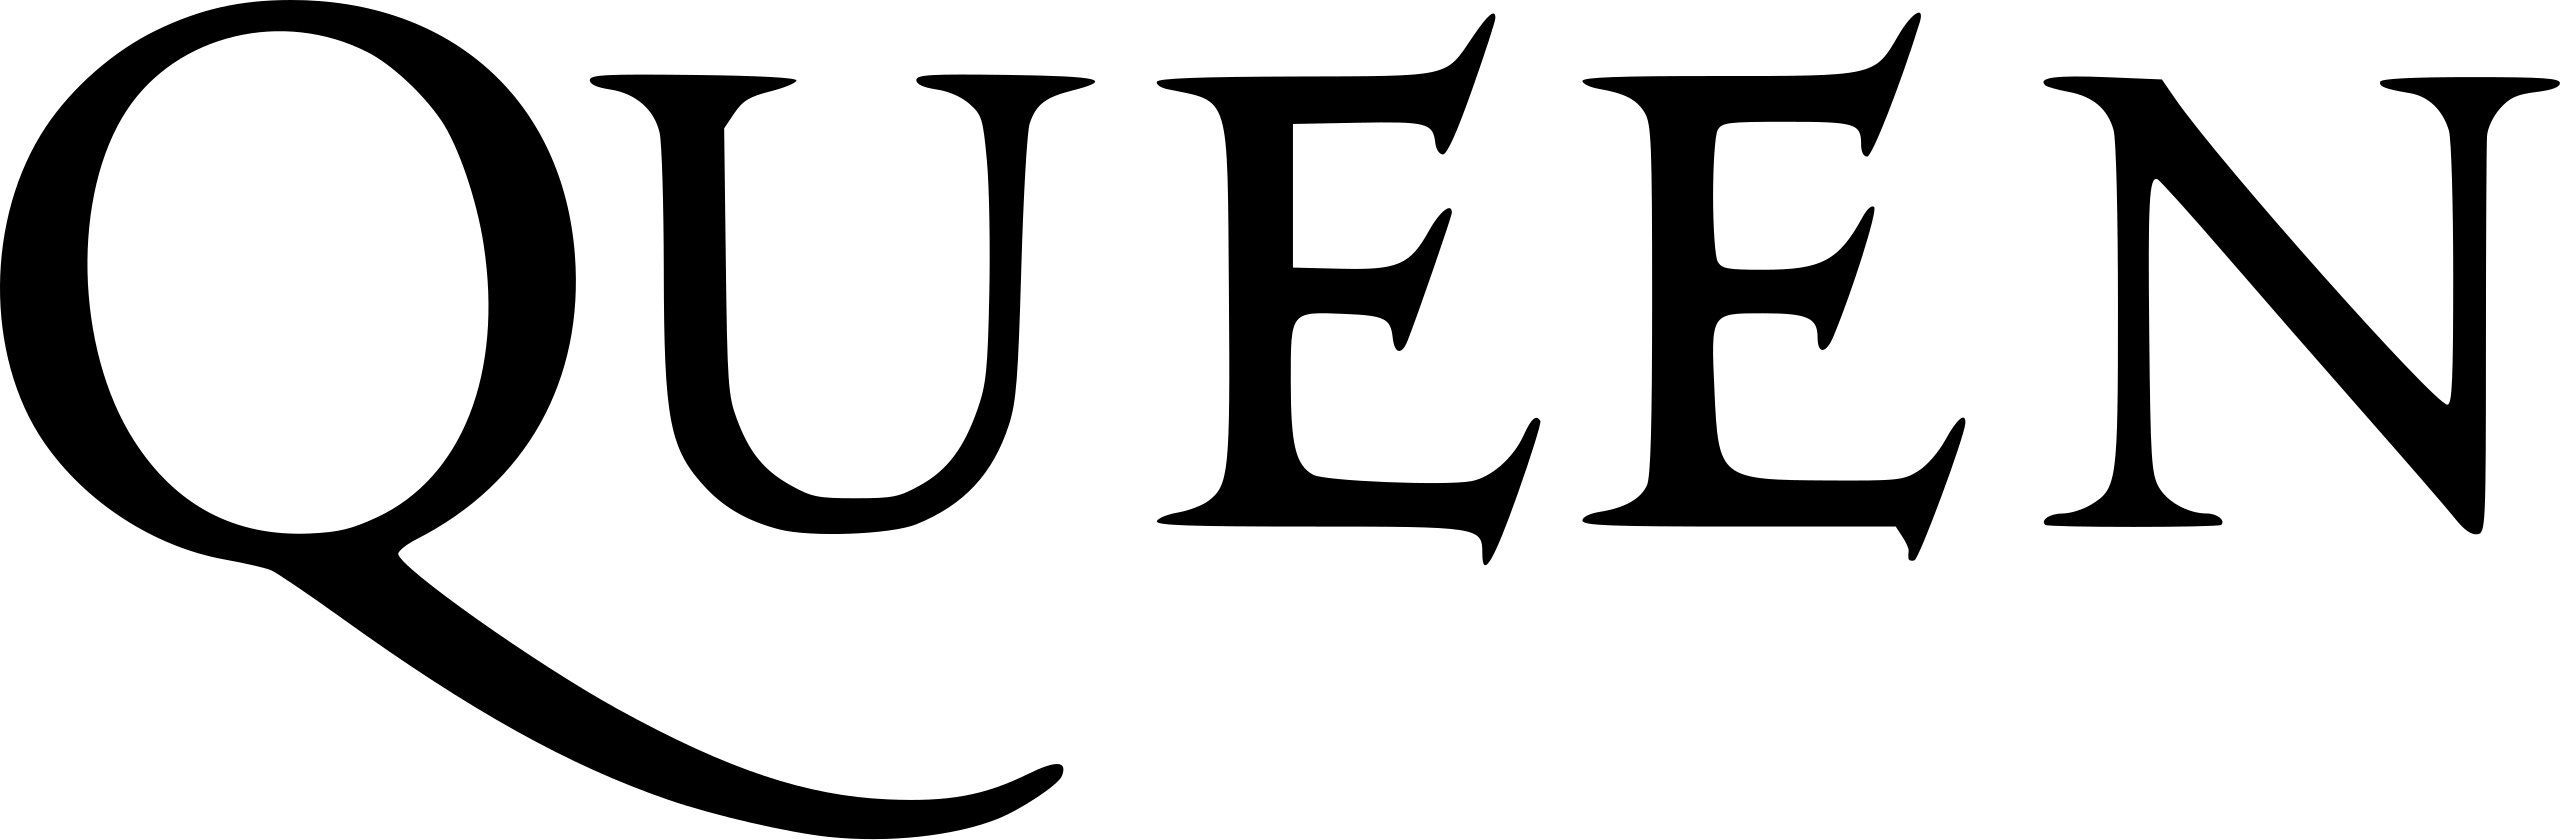 پرونده:Queen logo.svg - ویکی‌پدیا، دانشنامه آزاد